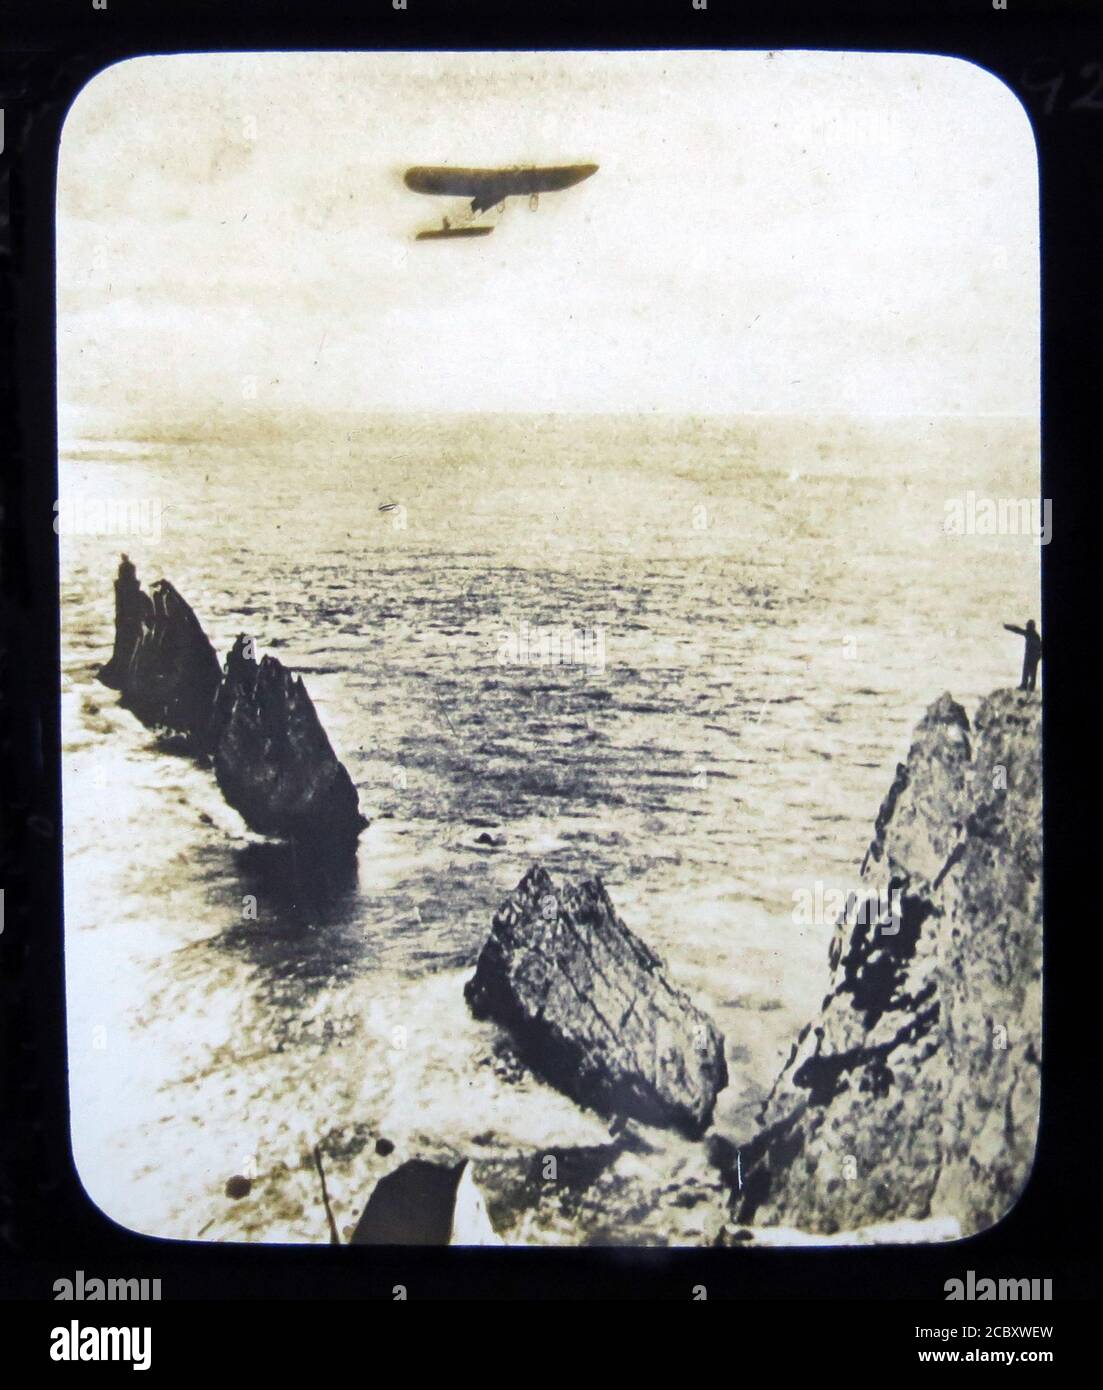 Une diapositive magique représentant l'aviateur français Léon Morane dans son monoplan Bleriot pendant son vol vers le phare Needles, à une distance de 21 miles en 25 minutes. Ce fut fait le 17 juillet 1910 lors de son apparition au Bournemouth Air Show. Diapositive publiée par W. Butcher & Sons, Londres et datant d'environ 1914. Banque D'Images